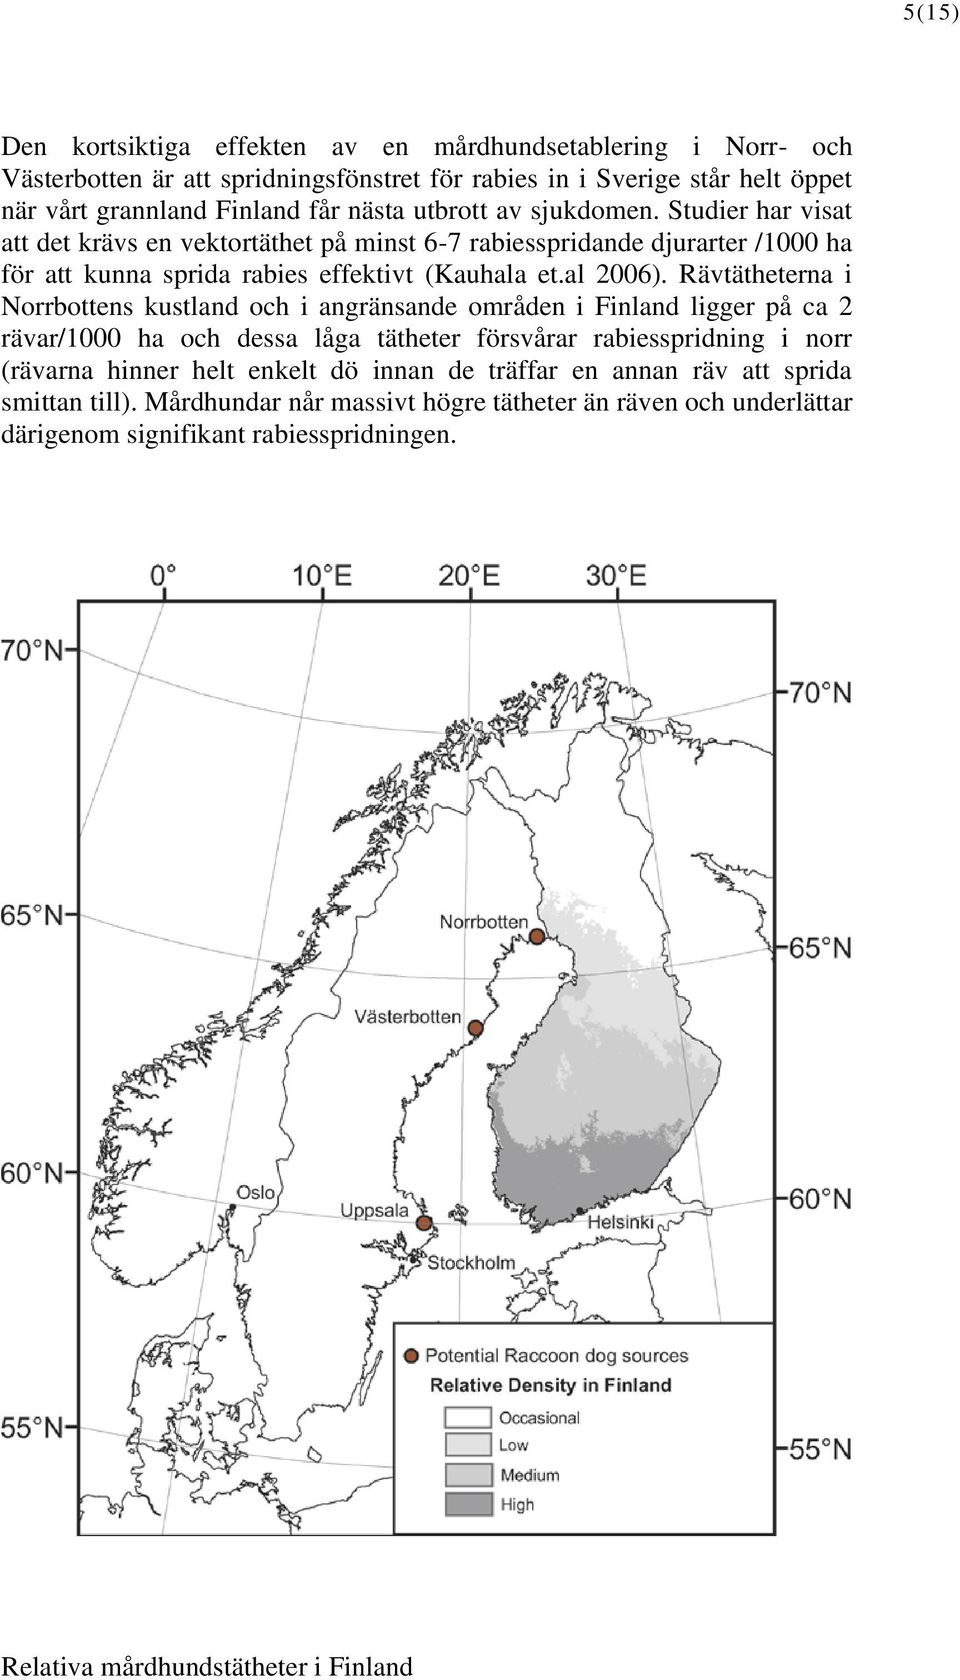 Rävtätheterna i Norrbottens kustland och i angränsande områden i Finland ligger på ca 2 rävar/1000 ha och dessa låga tätheter försvårar rabiesspridning i norr (rävarna hinner helt enkelt